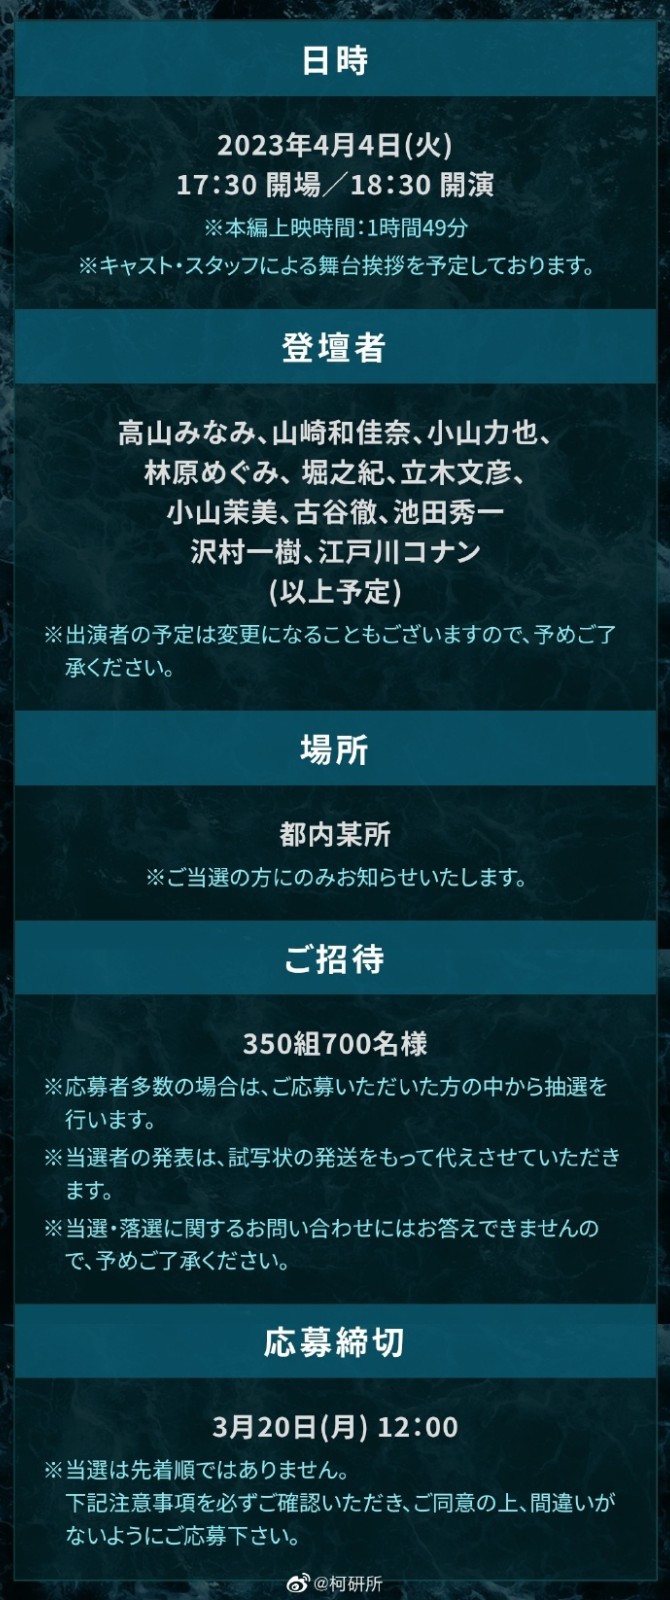 《名侦探柯南 黑铁的鱼影》将于4月4日在日本召开披露试映会